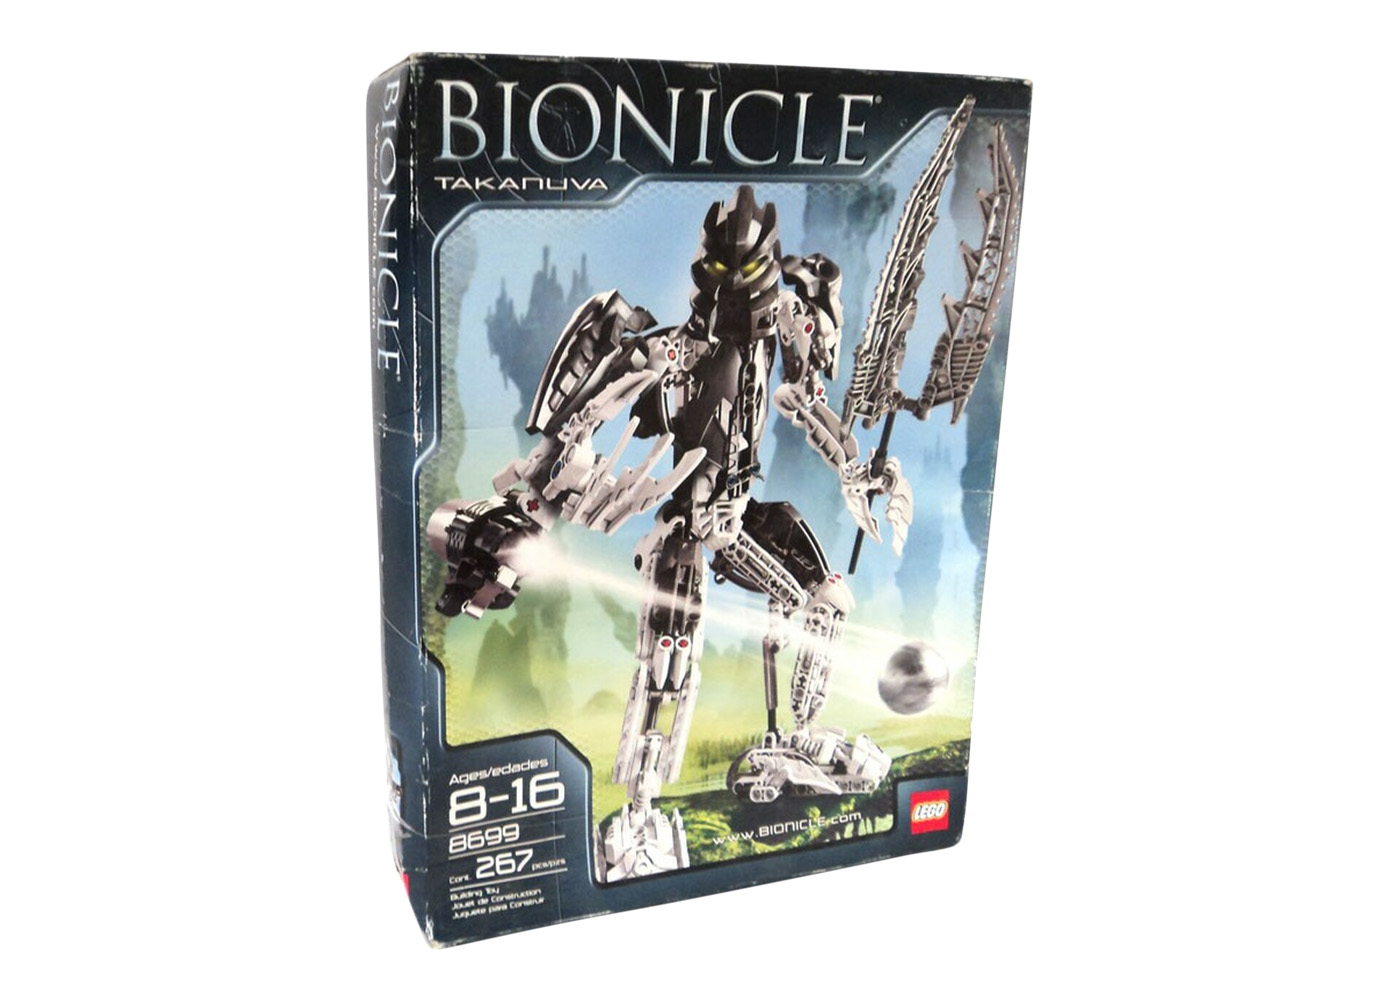 LEGO Bionicle Takanuva Set 8699 -